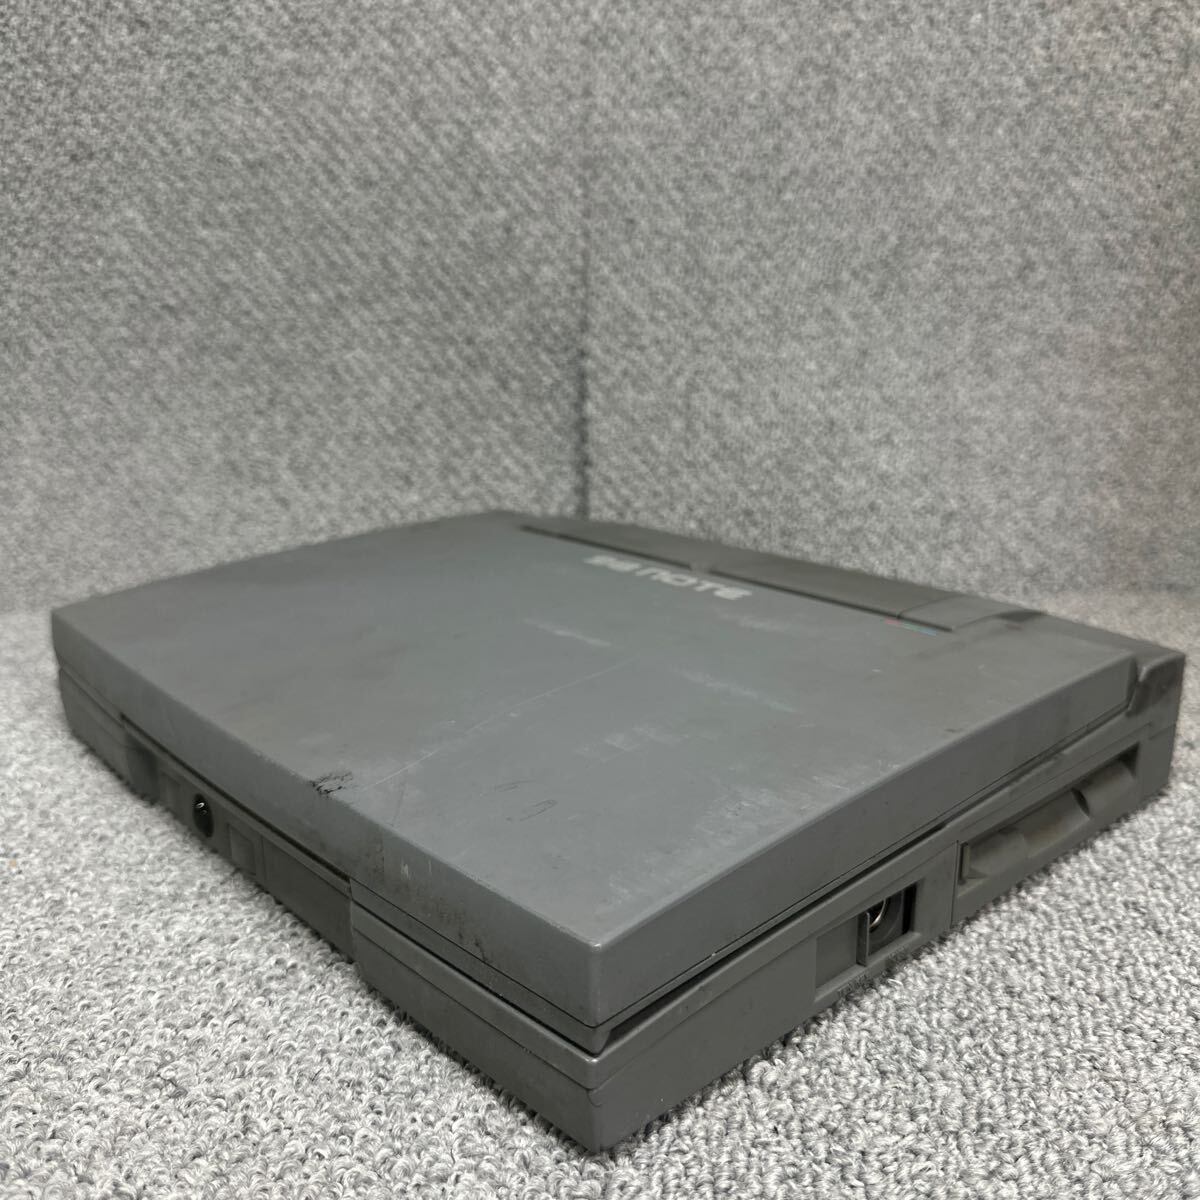 PCN98-1676 супер-скидка PC98 ноутбук NEC PC-9821Ne электризация не возможно Junk включение в покупку возможность 